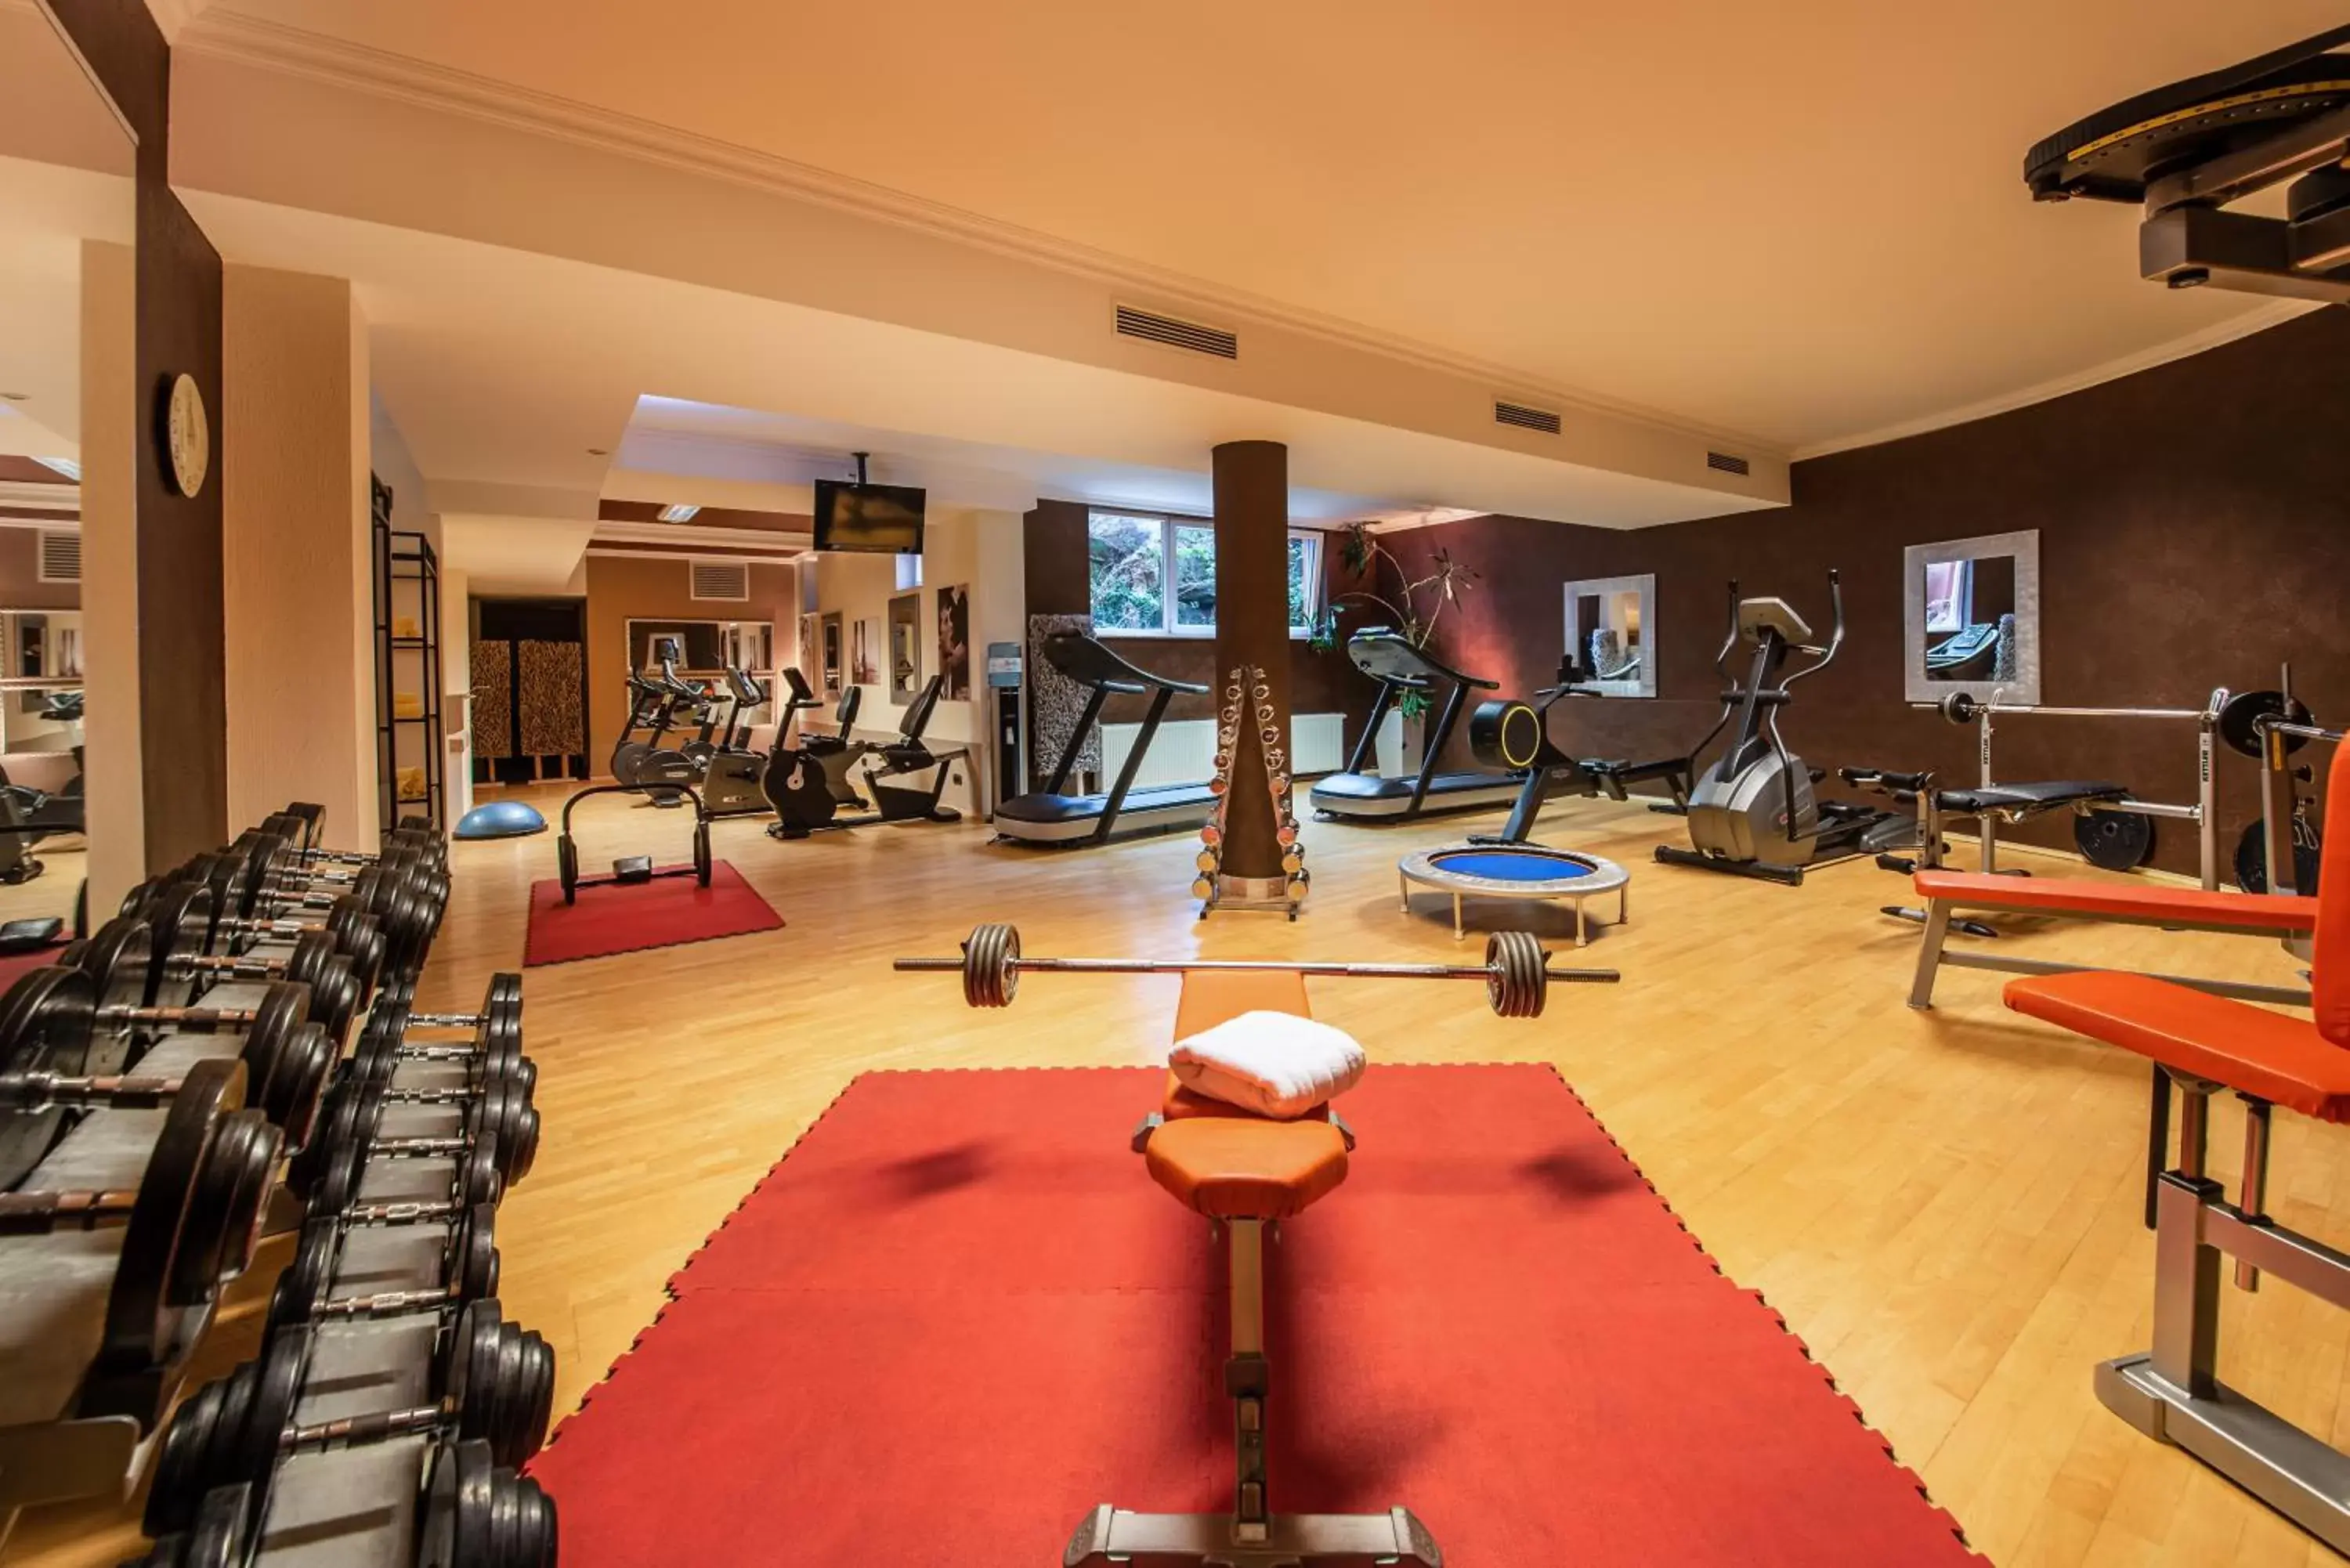 Fitness centre/facilities, Fitness Center/Facilities in Hotel Villa Toskana